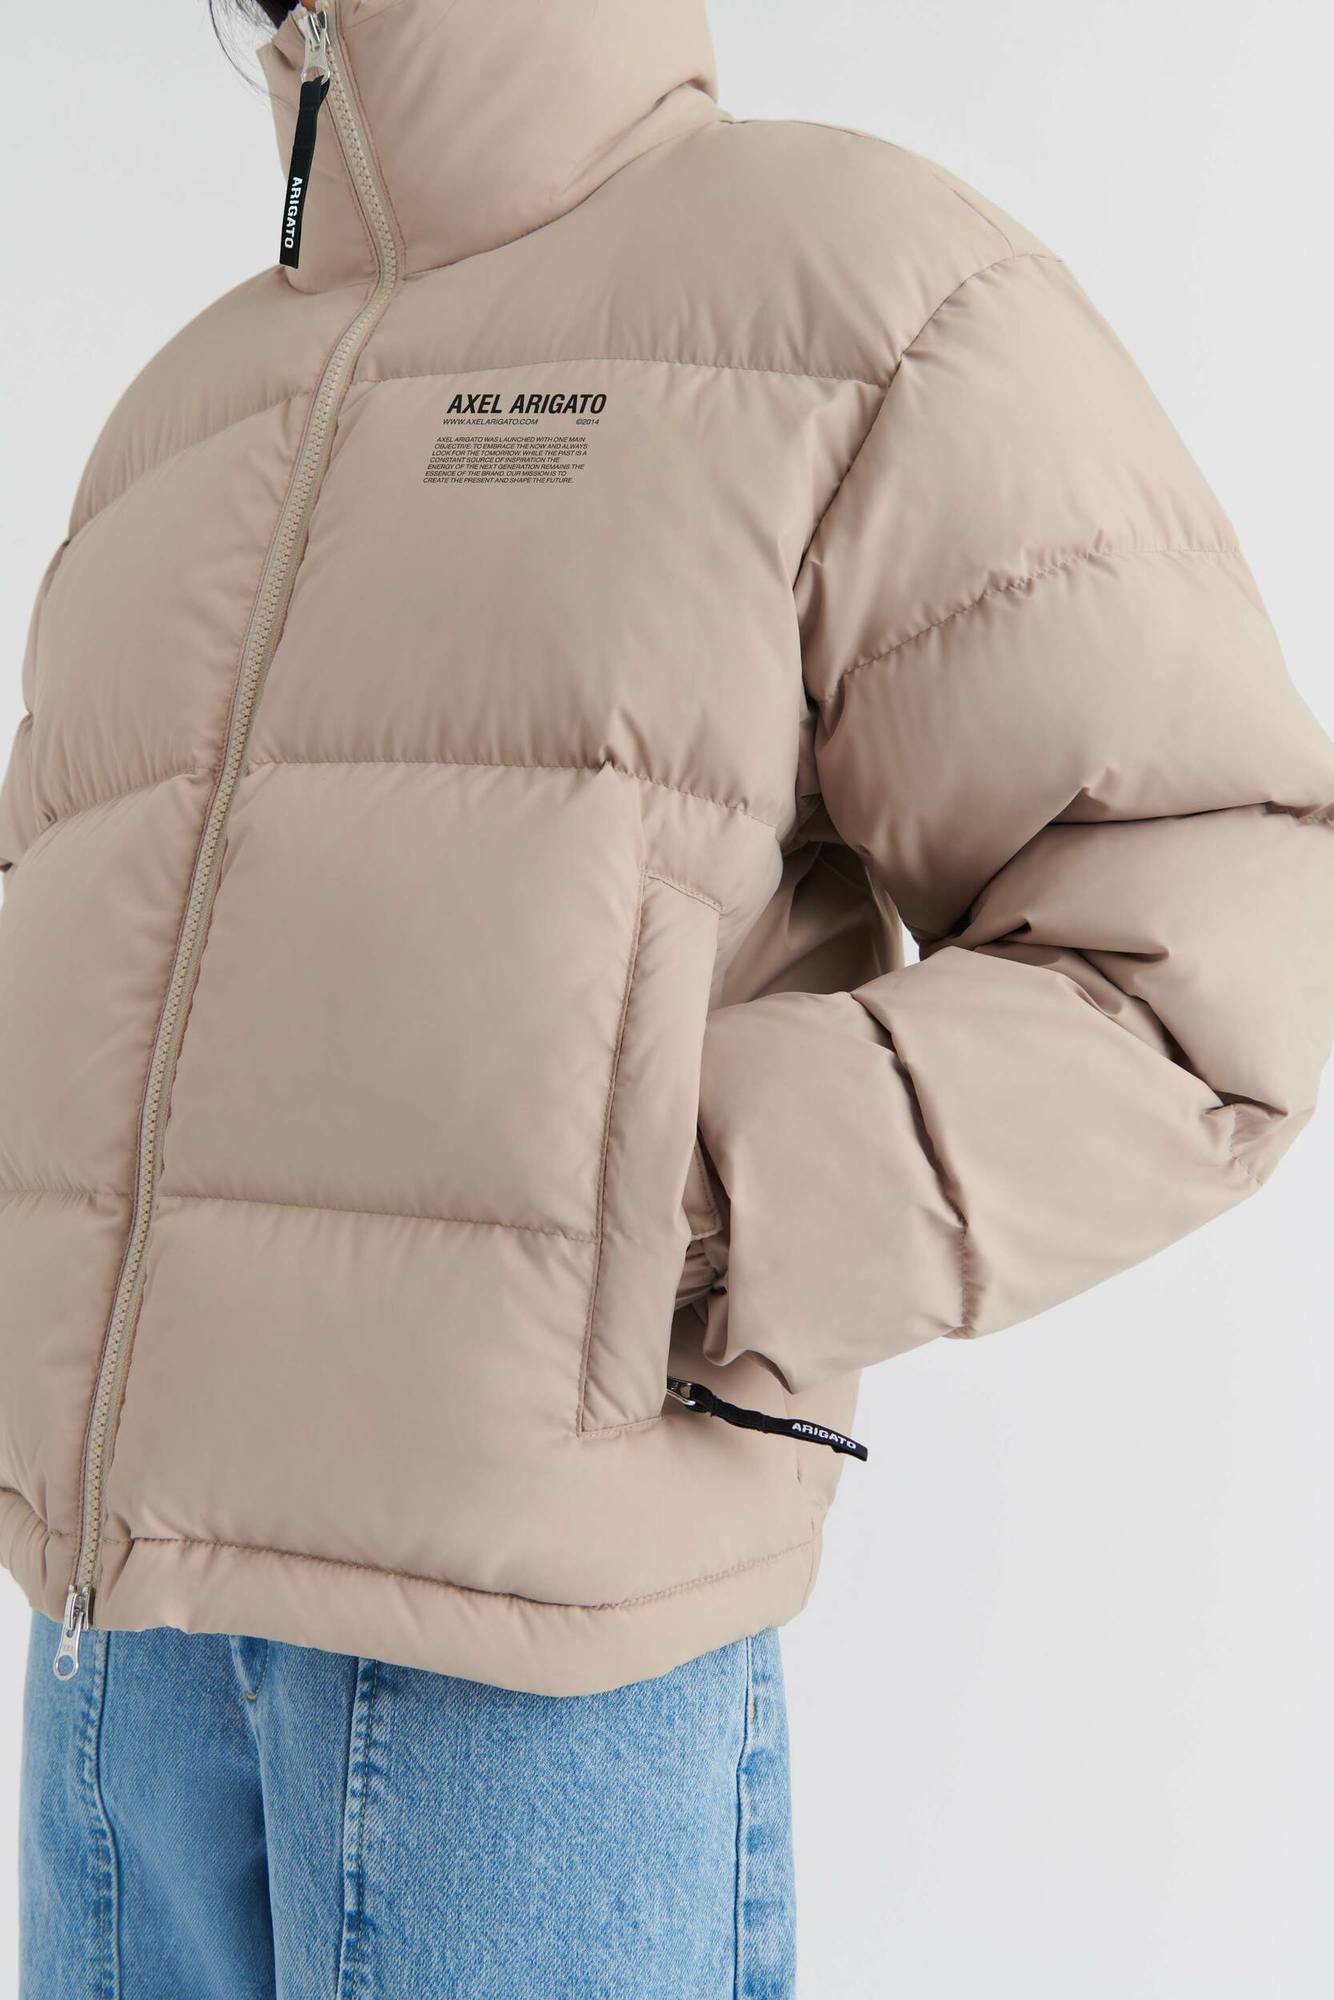 AXEL ARIGATO Observer Puffer Jacket in Pale Beige XS